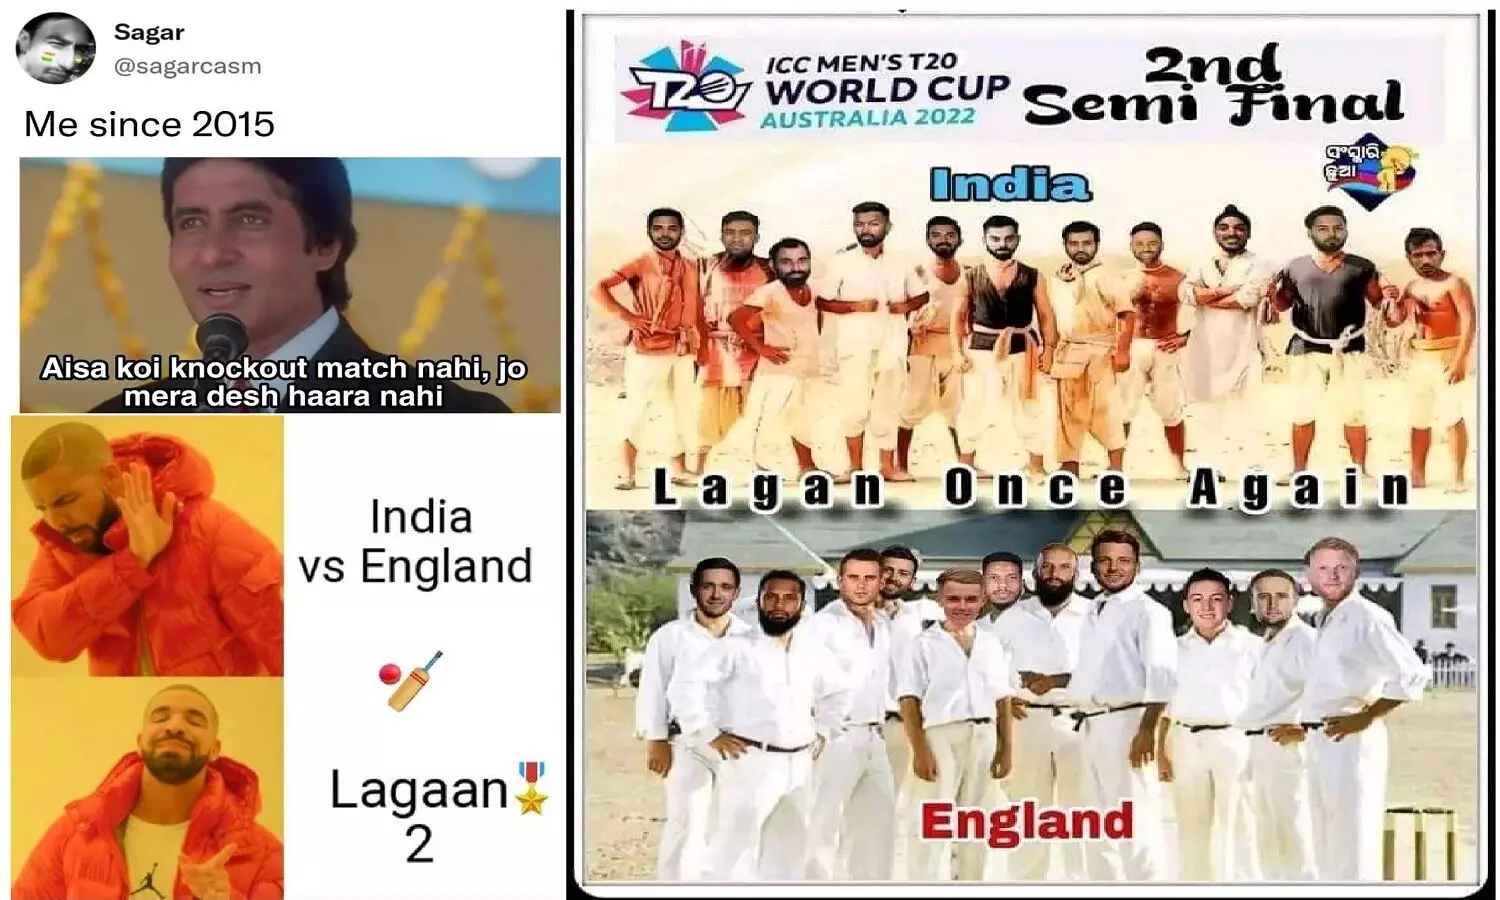 India Vs England Meme: भारत की हार से दुःखी हो? ये Memes देखकर थोड़ा चिल मार लो